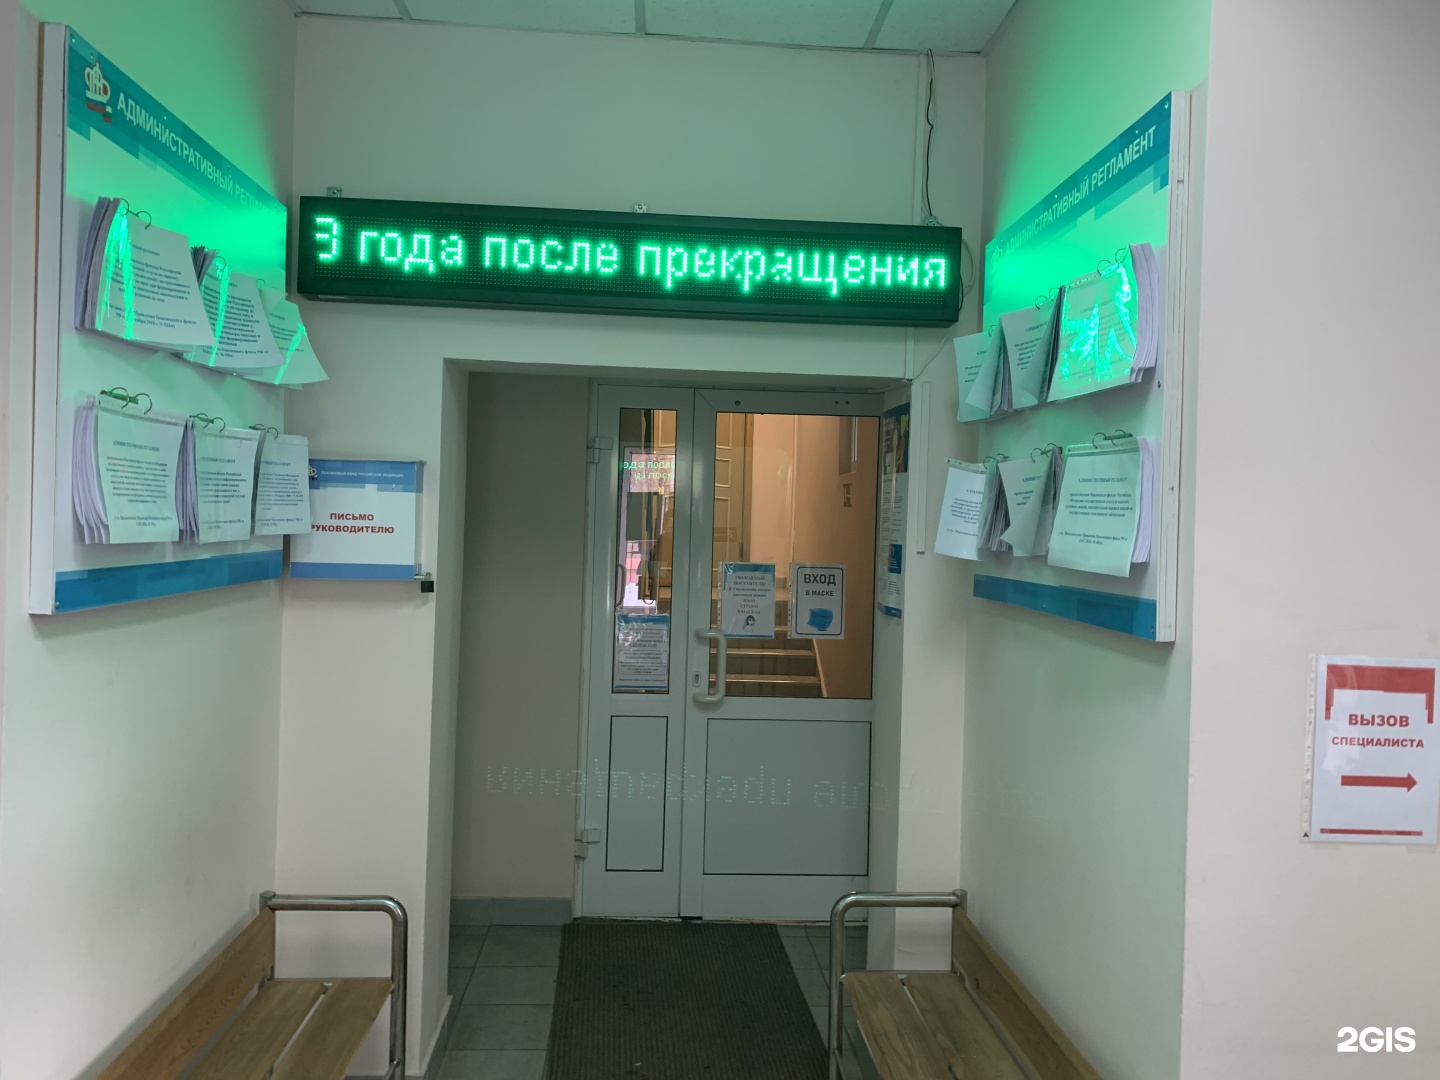 Иркутский пенсионный фонд номер телефона